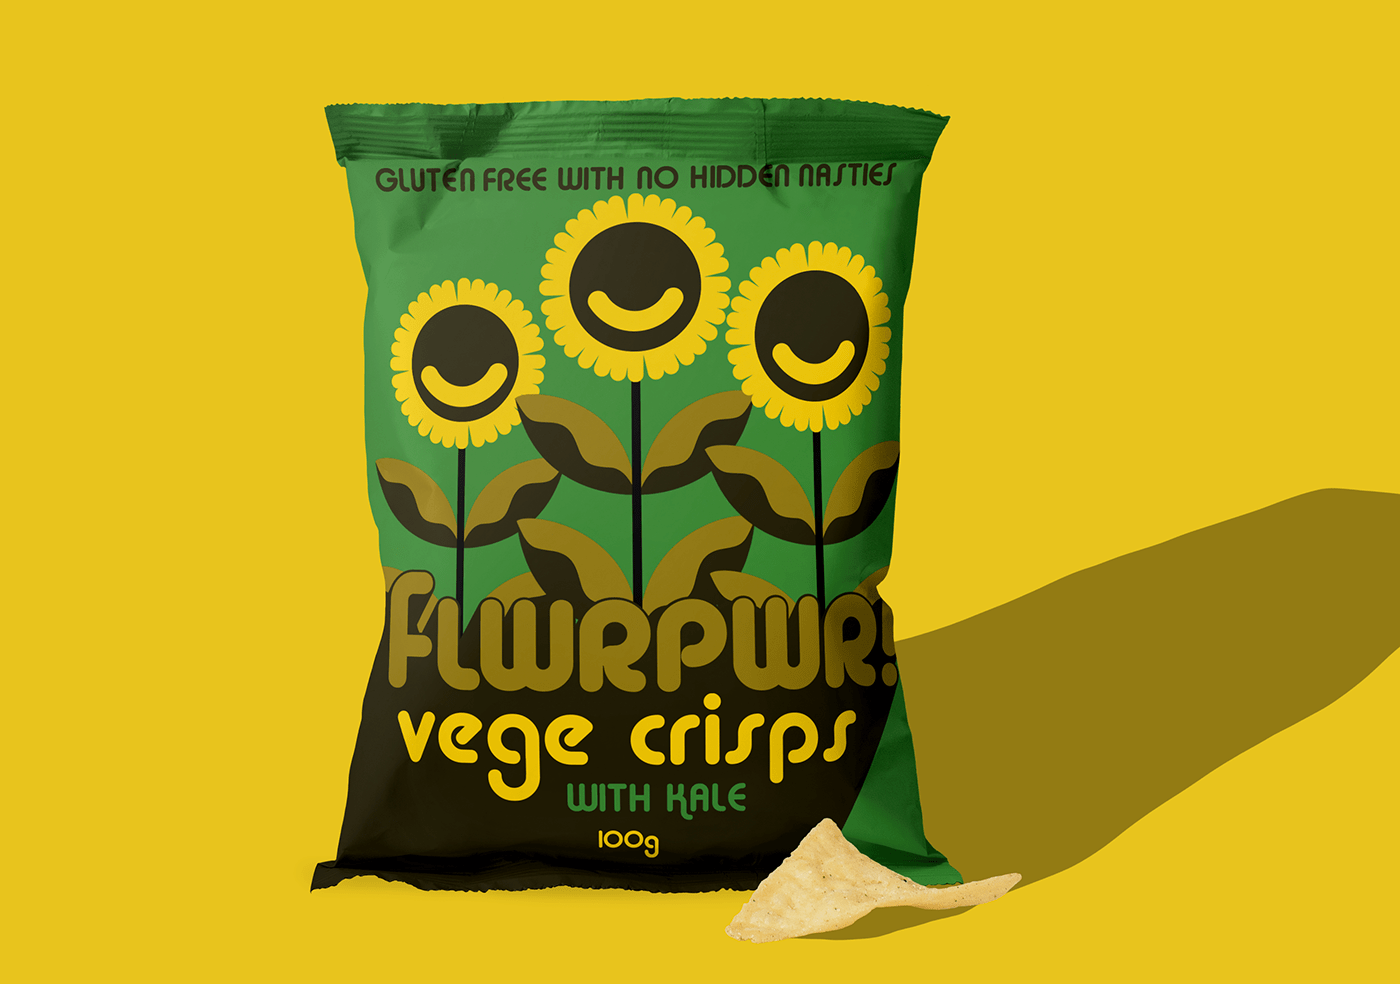 bag of chips chipbag chips CRISPS Packaging packaging design Vegecrisps